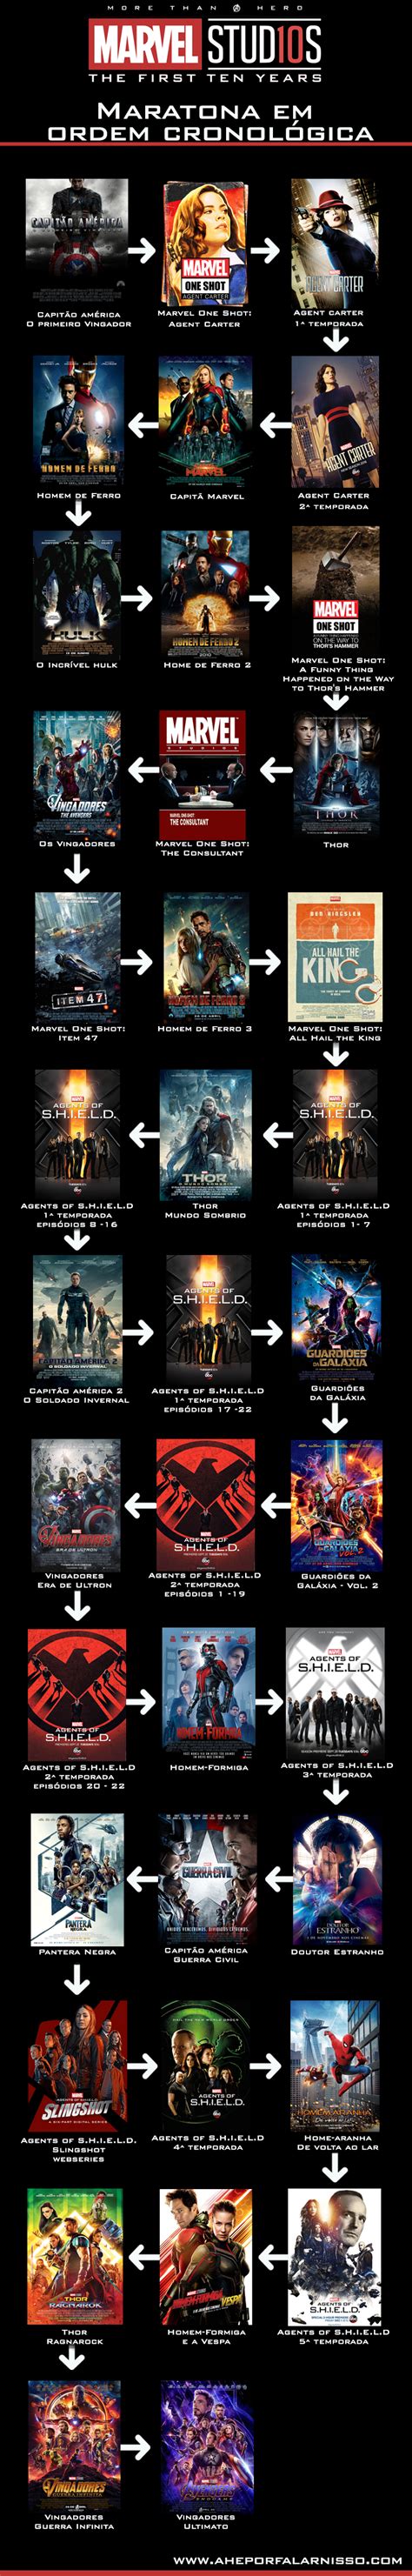 Mcu Em Ordem Cronol Gica Ordem Dos Filmes Da Marvel Cronologia